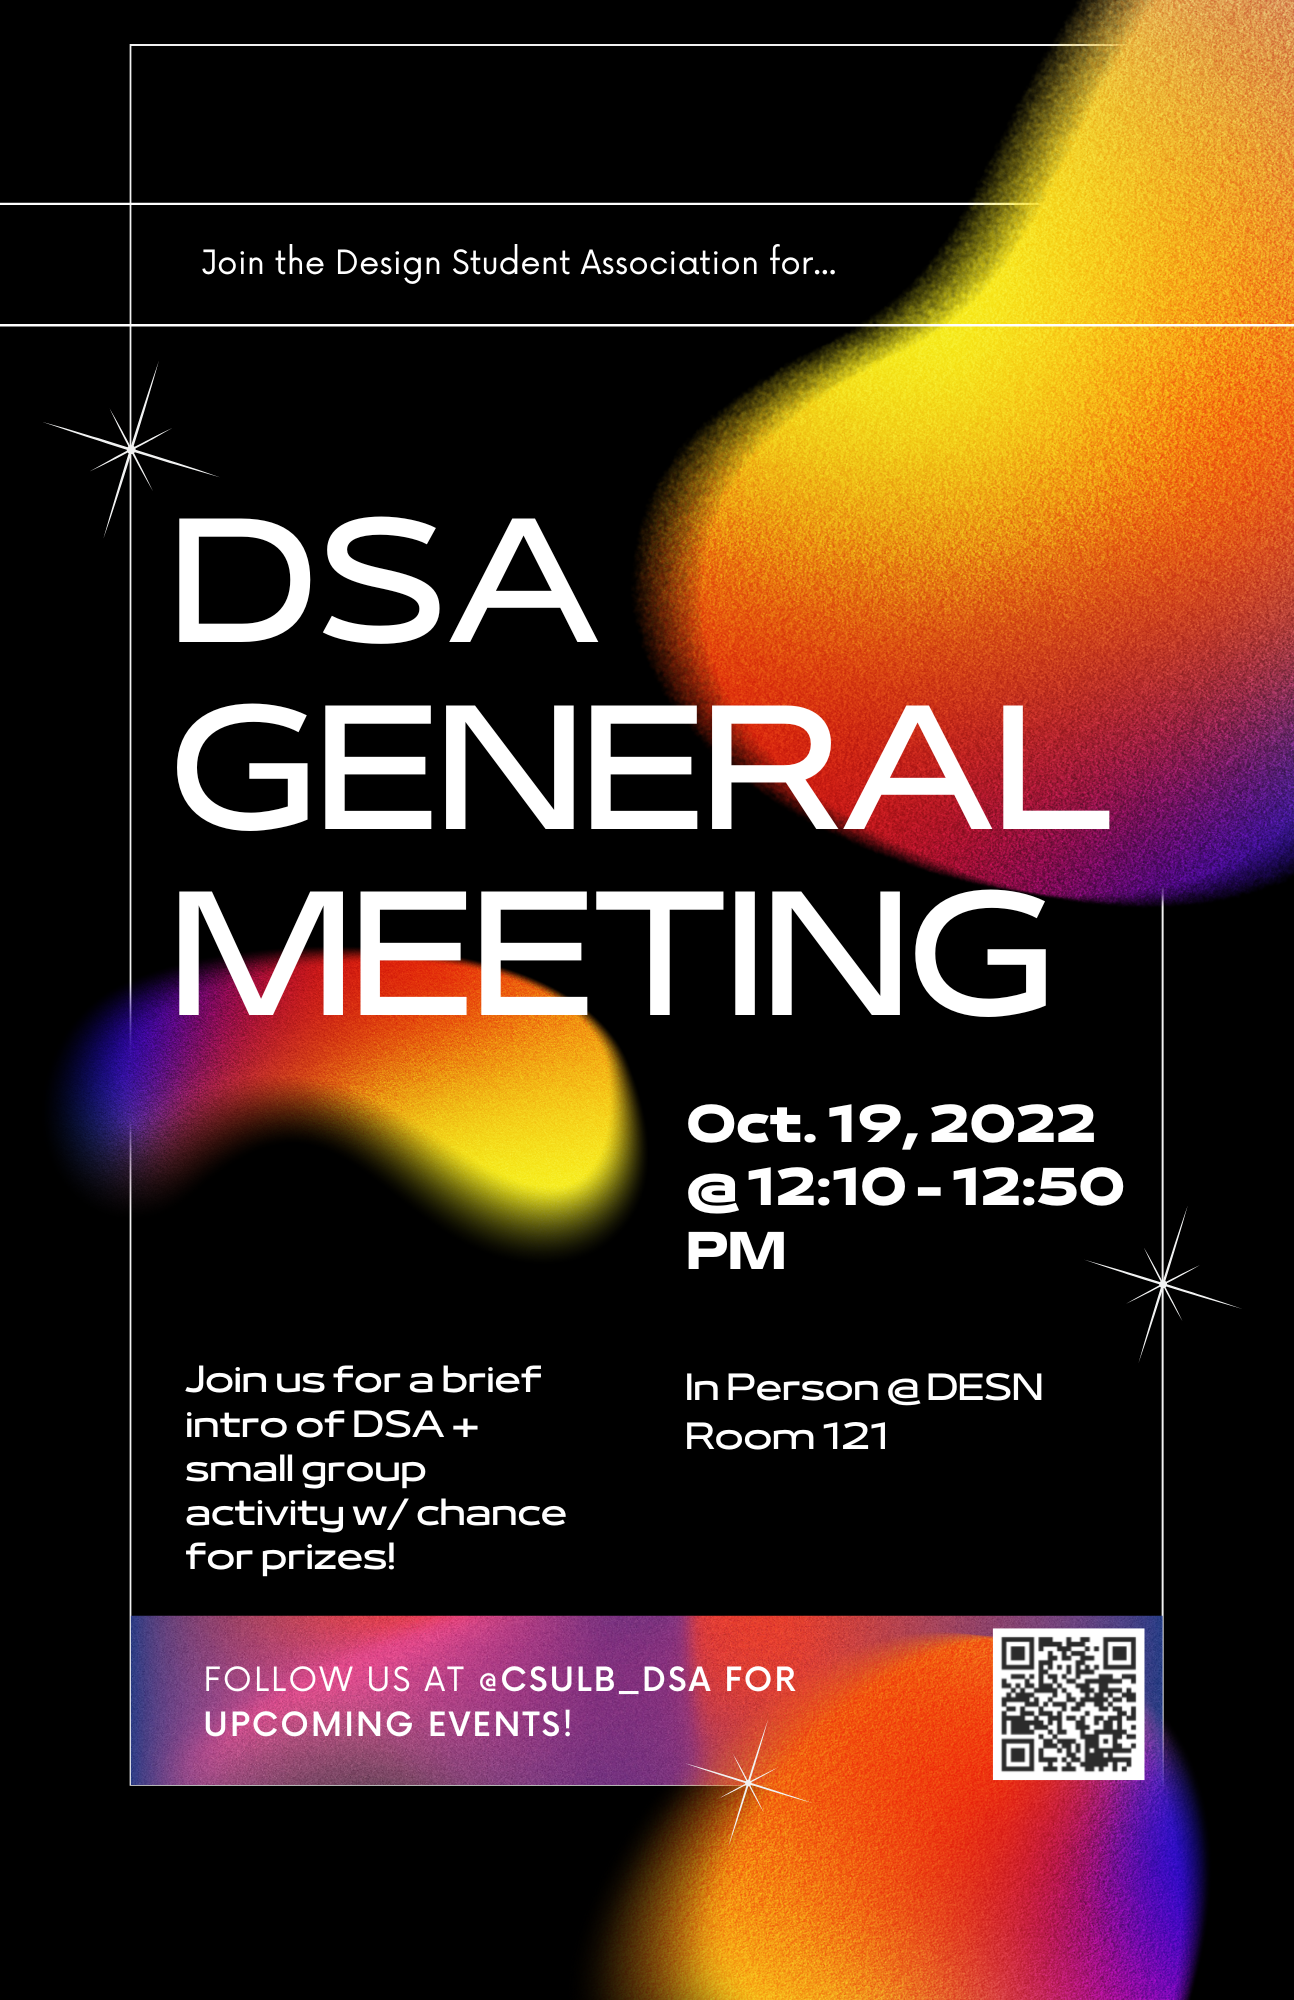 DSA GENERAL MEETING Oct. 19, 2022 12:10 -12:50 PM